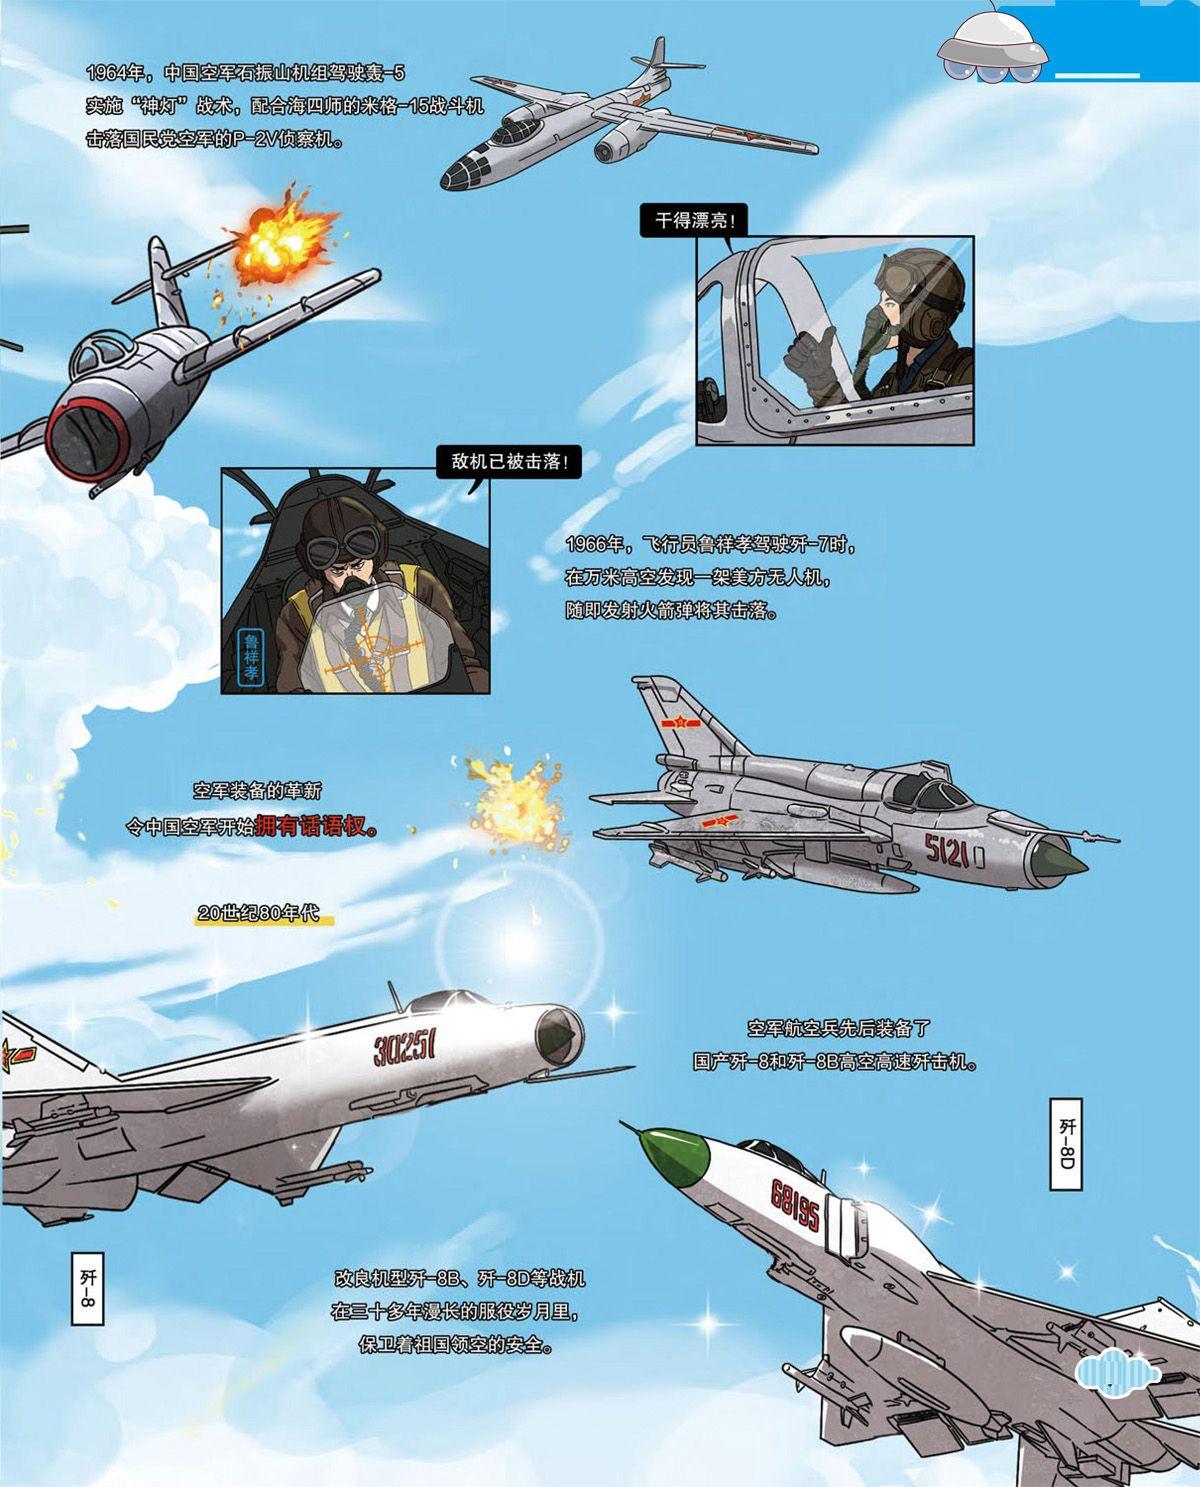 中国空军发展史